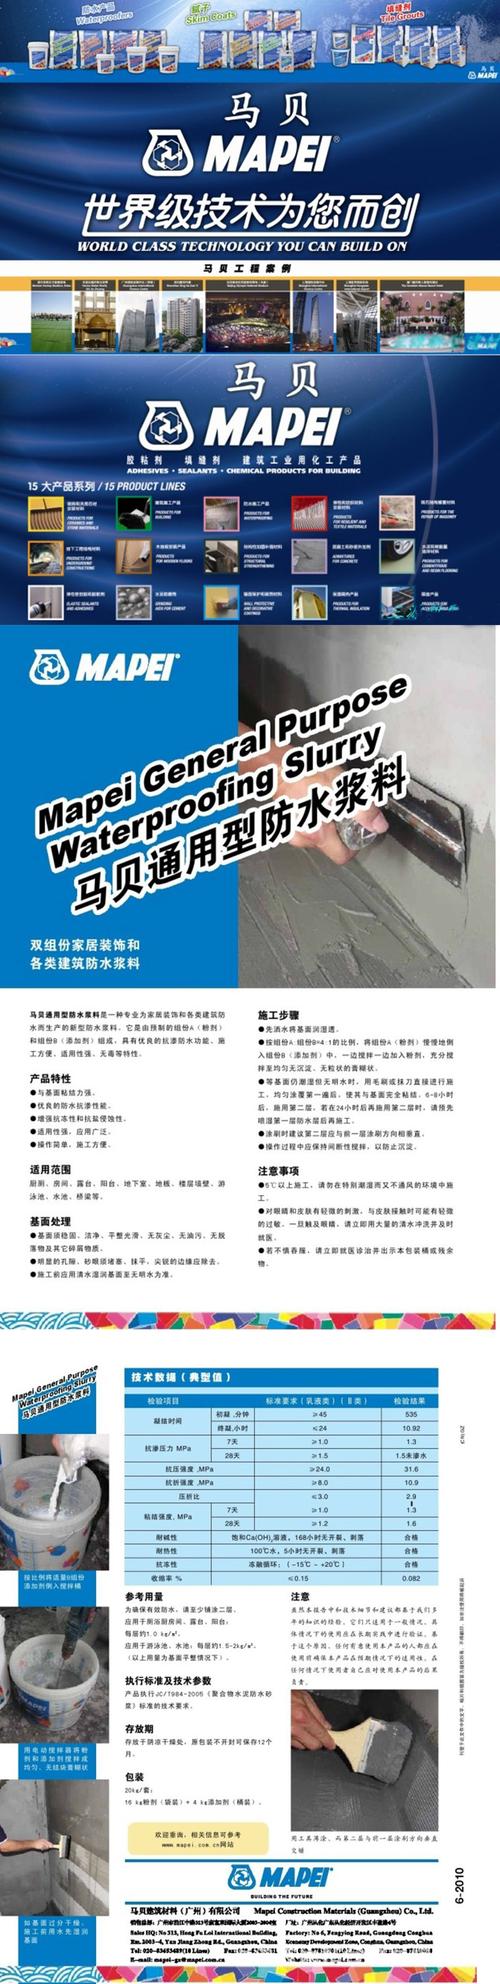 马贝通用防水浆料是一种专业为家居装饰和各类建筑防水而生产的新型